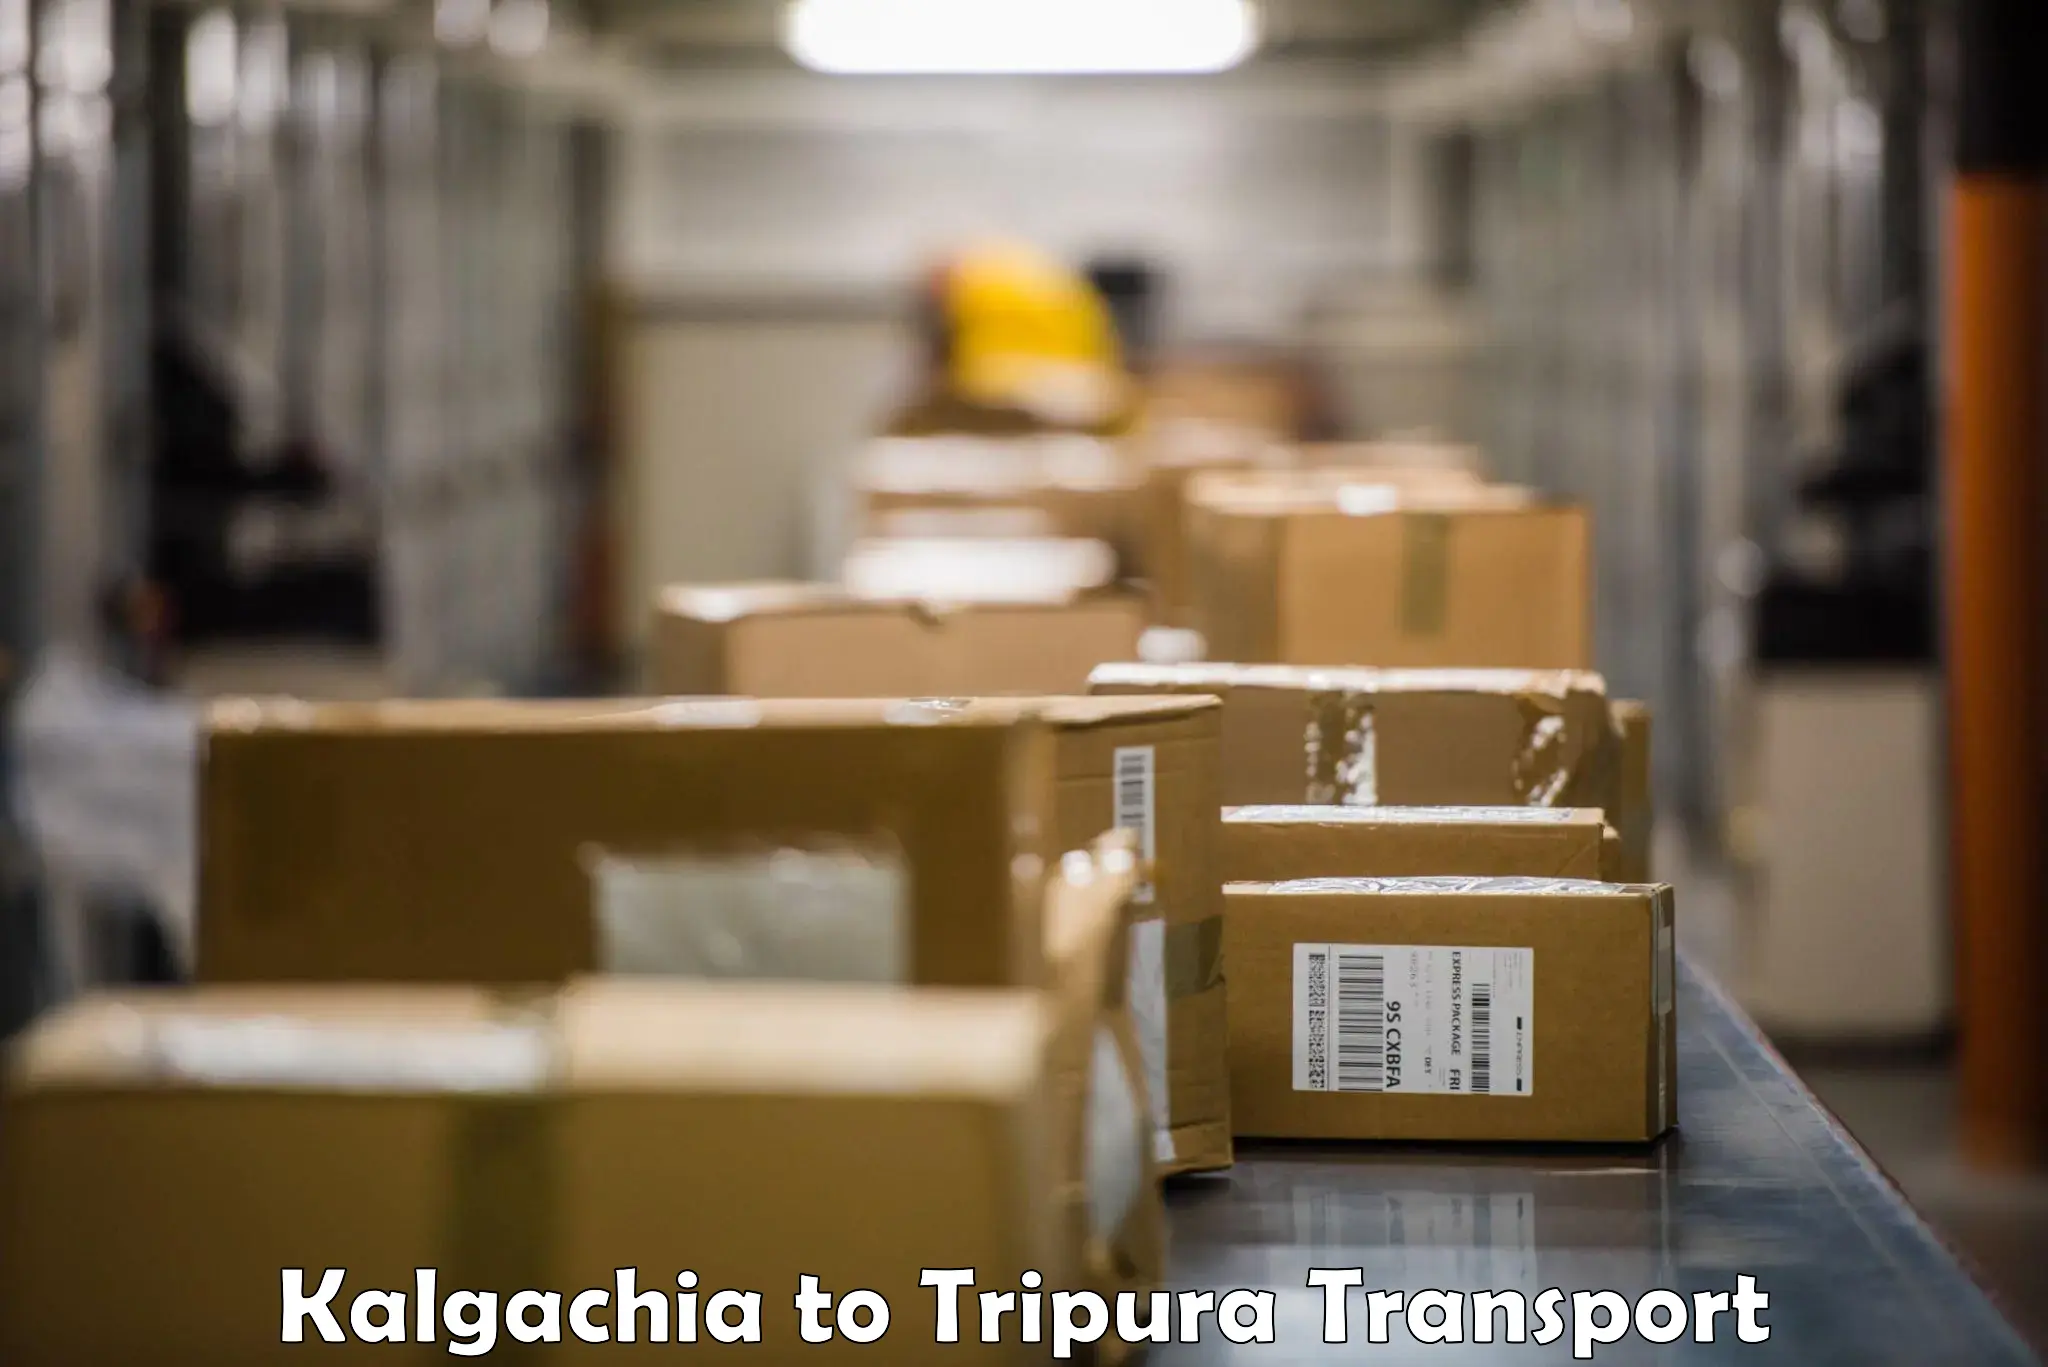 Online transport Kalgachia to Udaipur Tripura